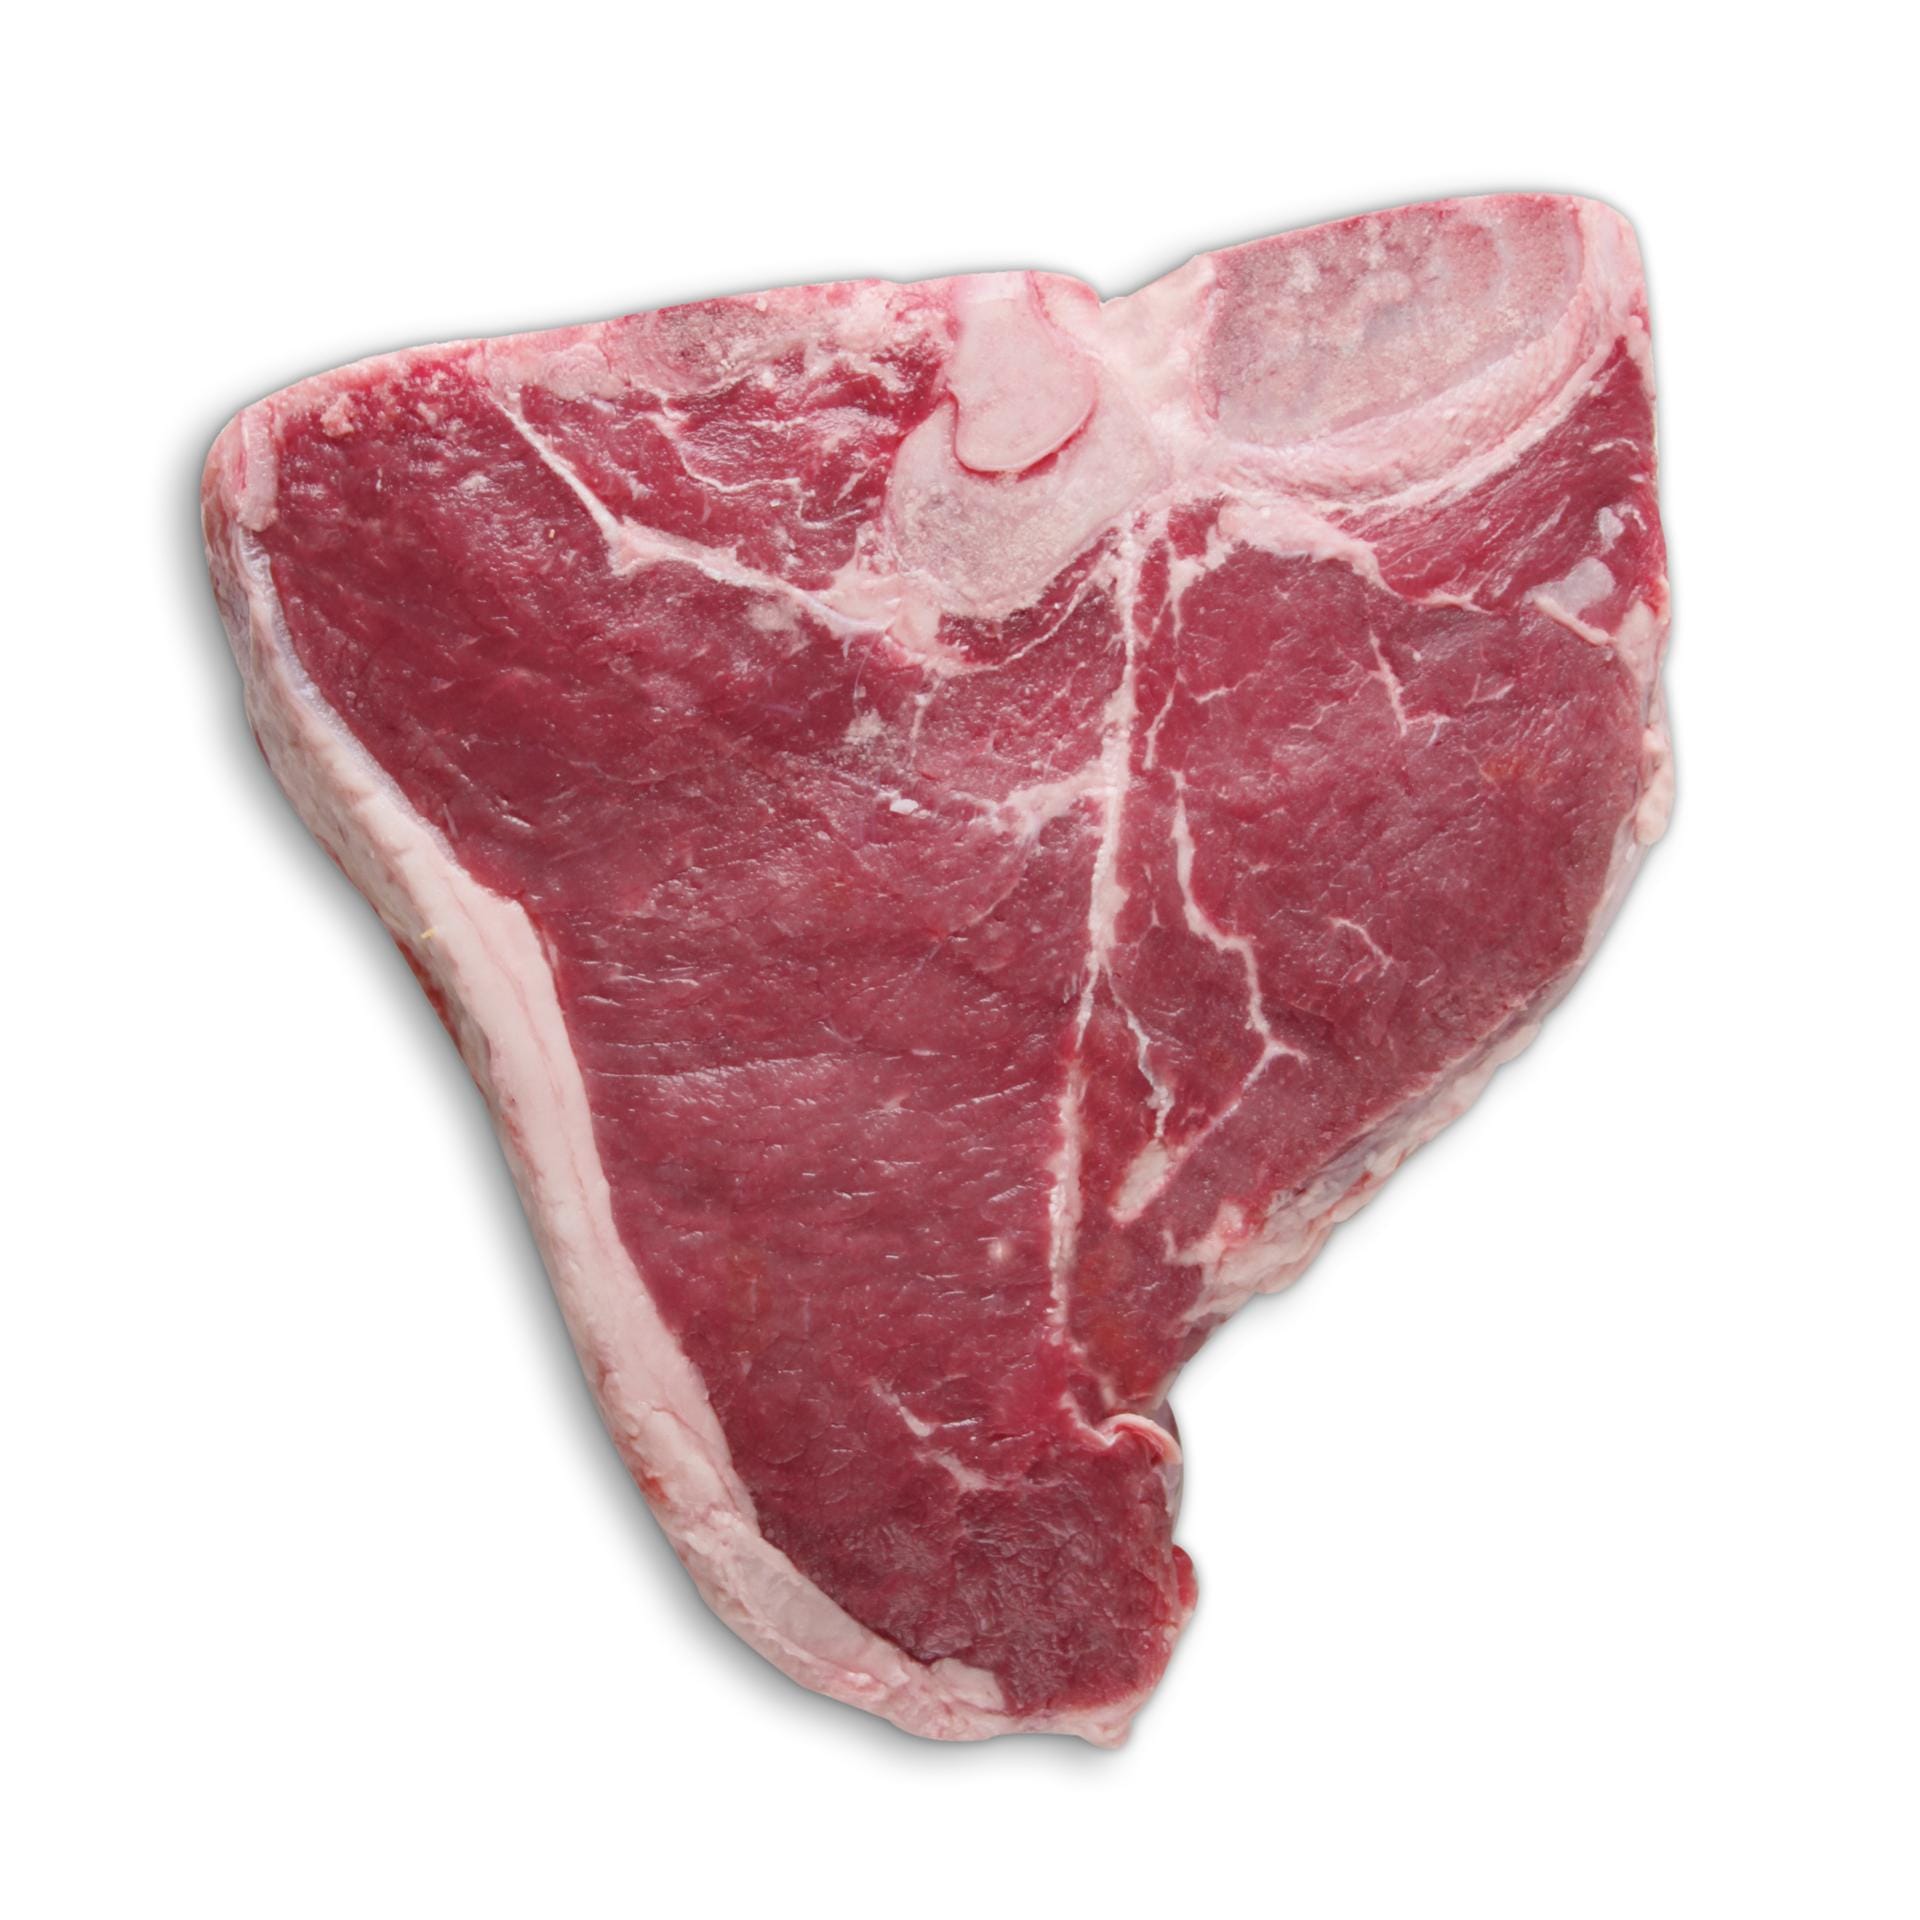 Für dieses Steak Florentiner Art beträgt der Kilopreis stolze 79 Euro.